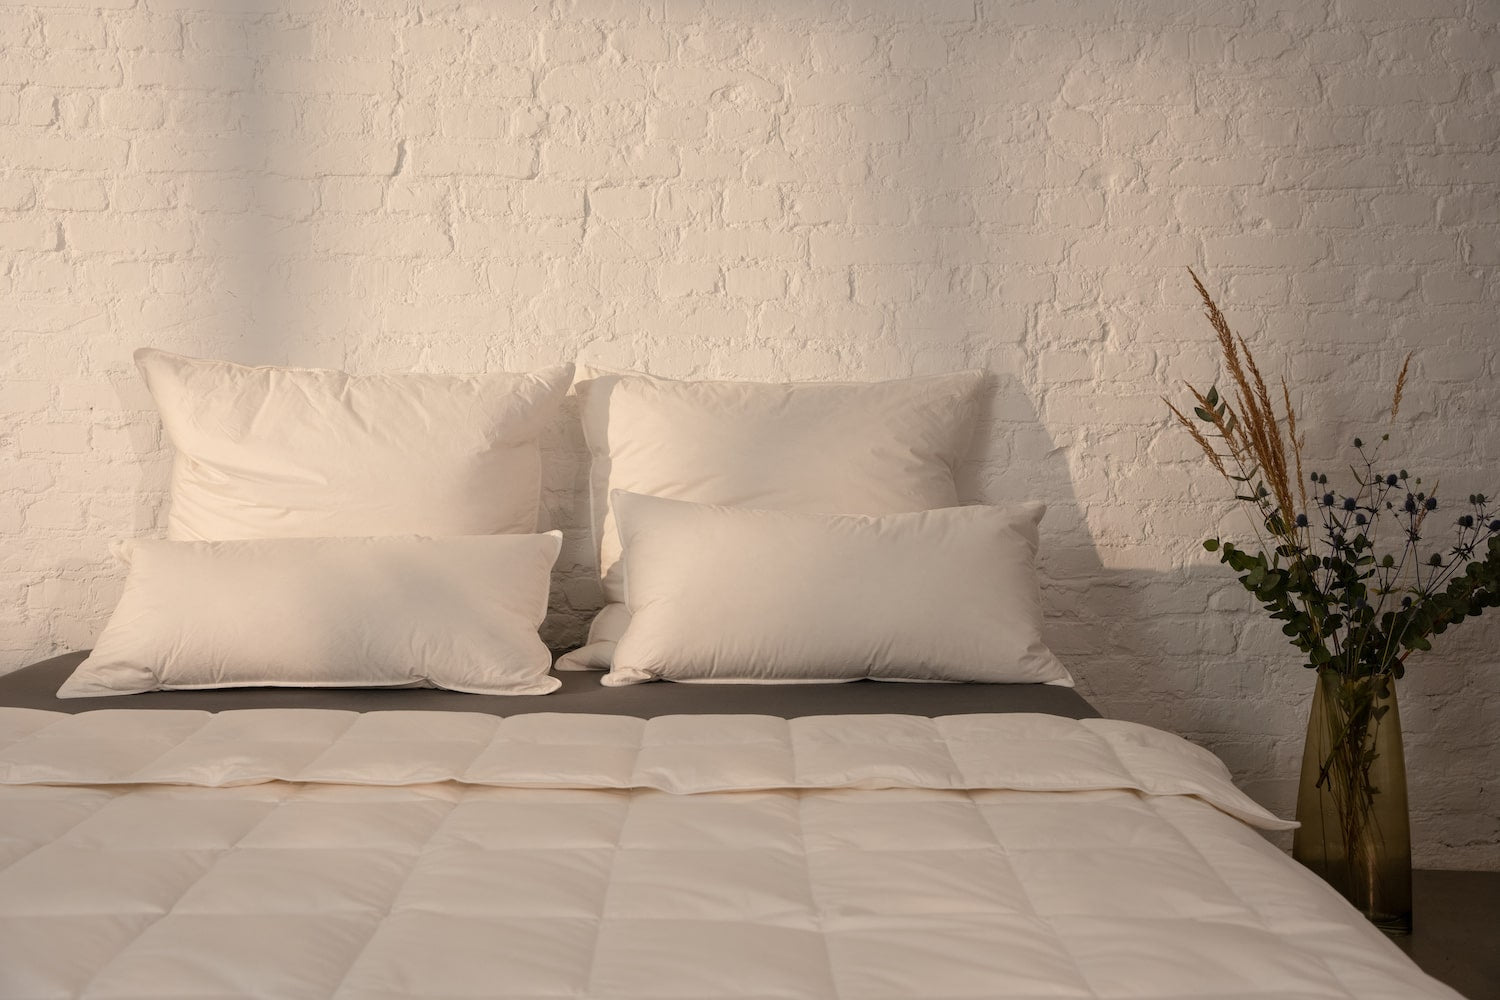 Die LuxeCosy Bettwaren begeistern durch Qualität und Komfort. Made in Germany sind sie aufgezeigt auf einem Bett.